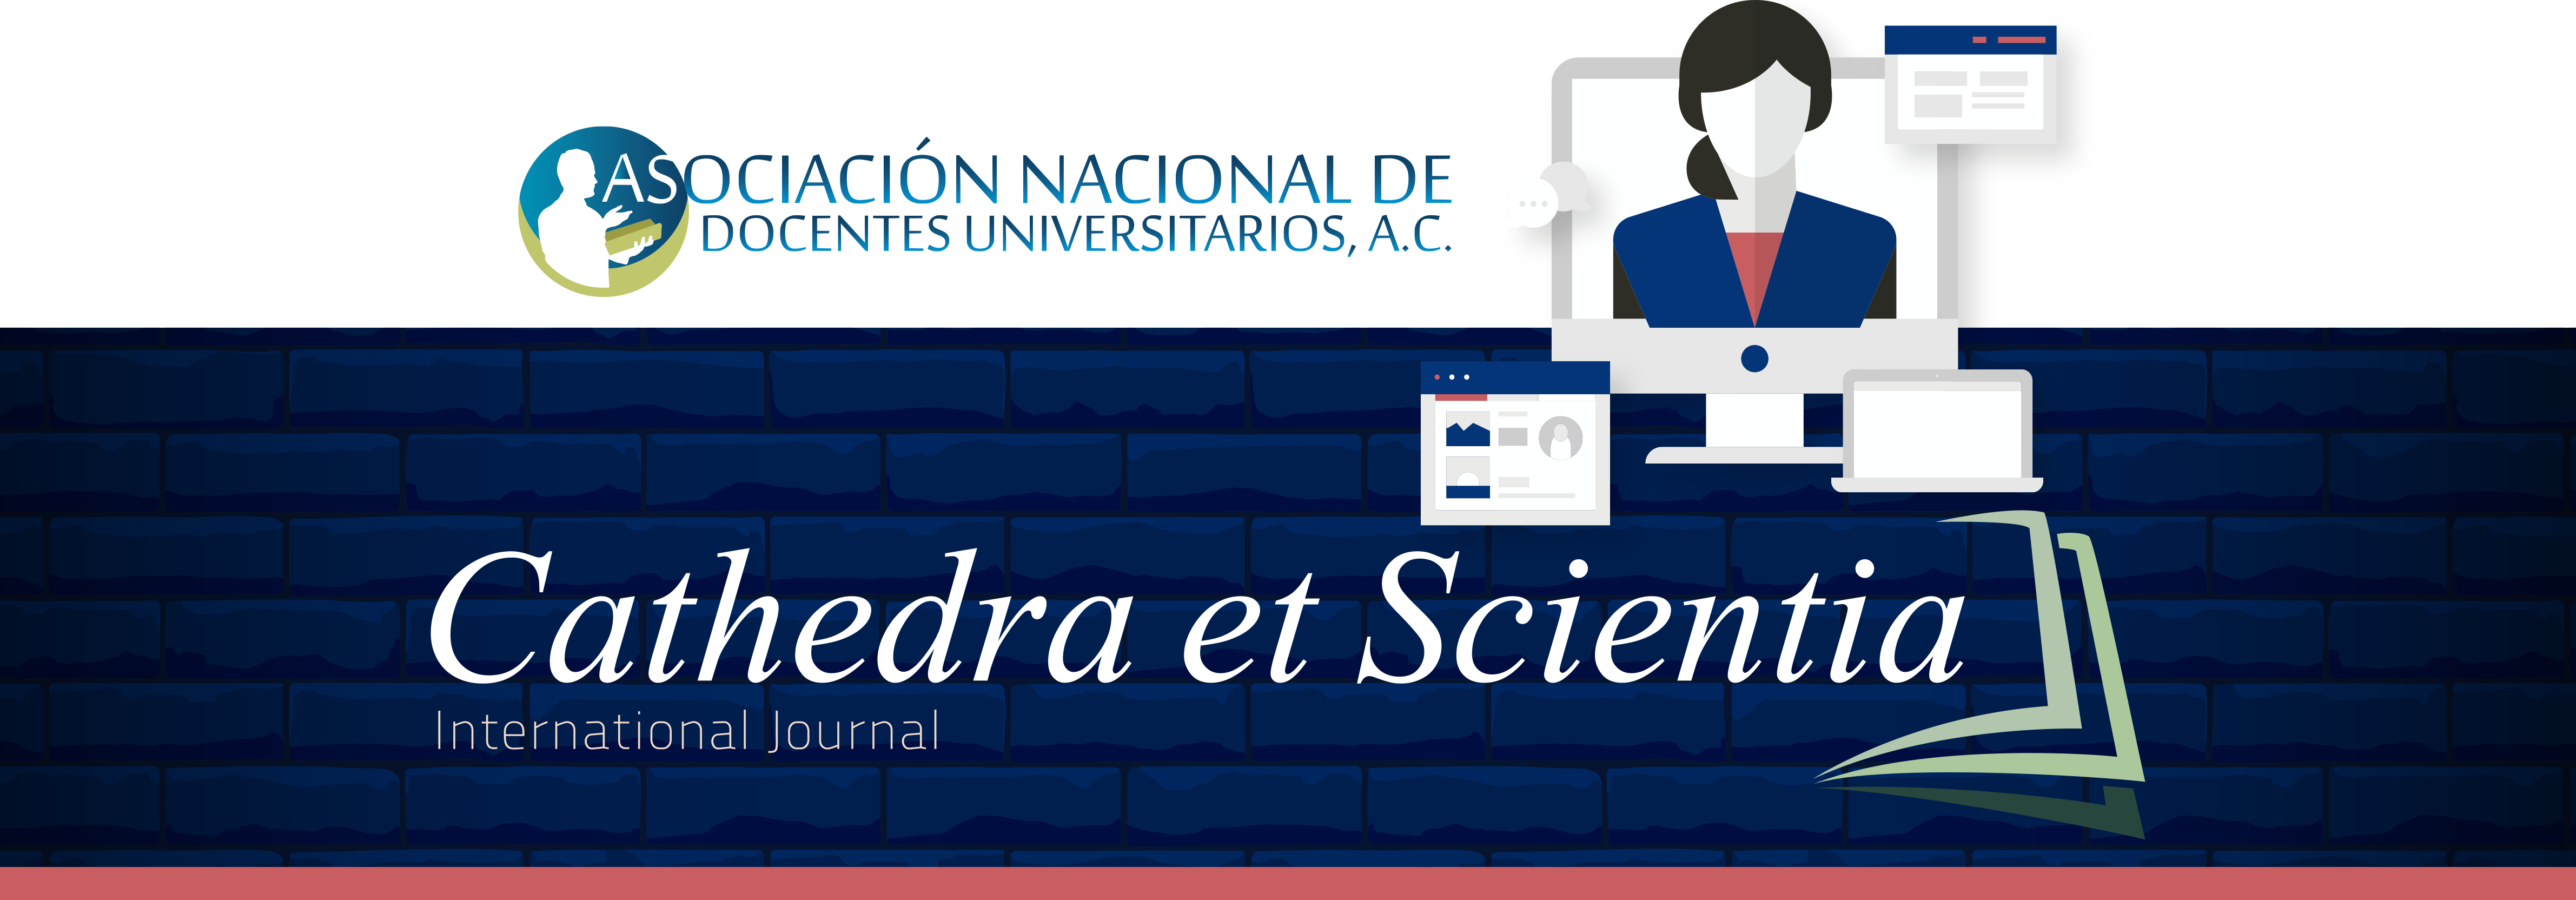 cathedra_et_scientia_international_journal_encabezado.png